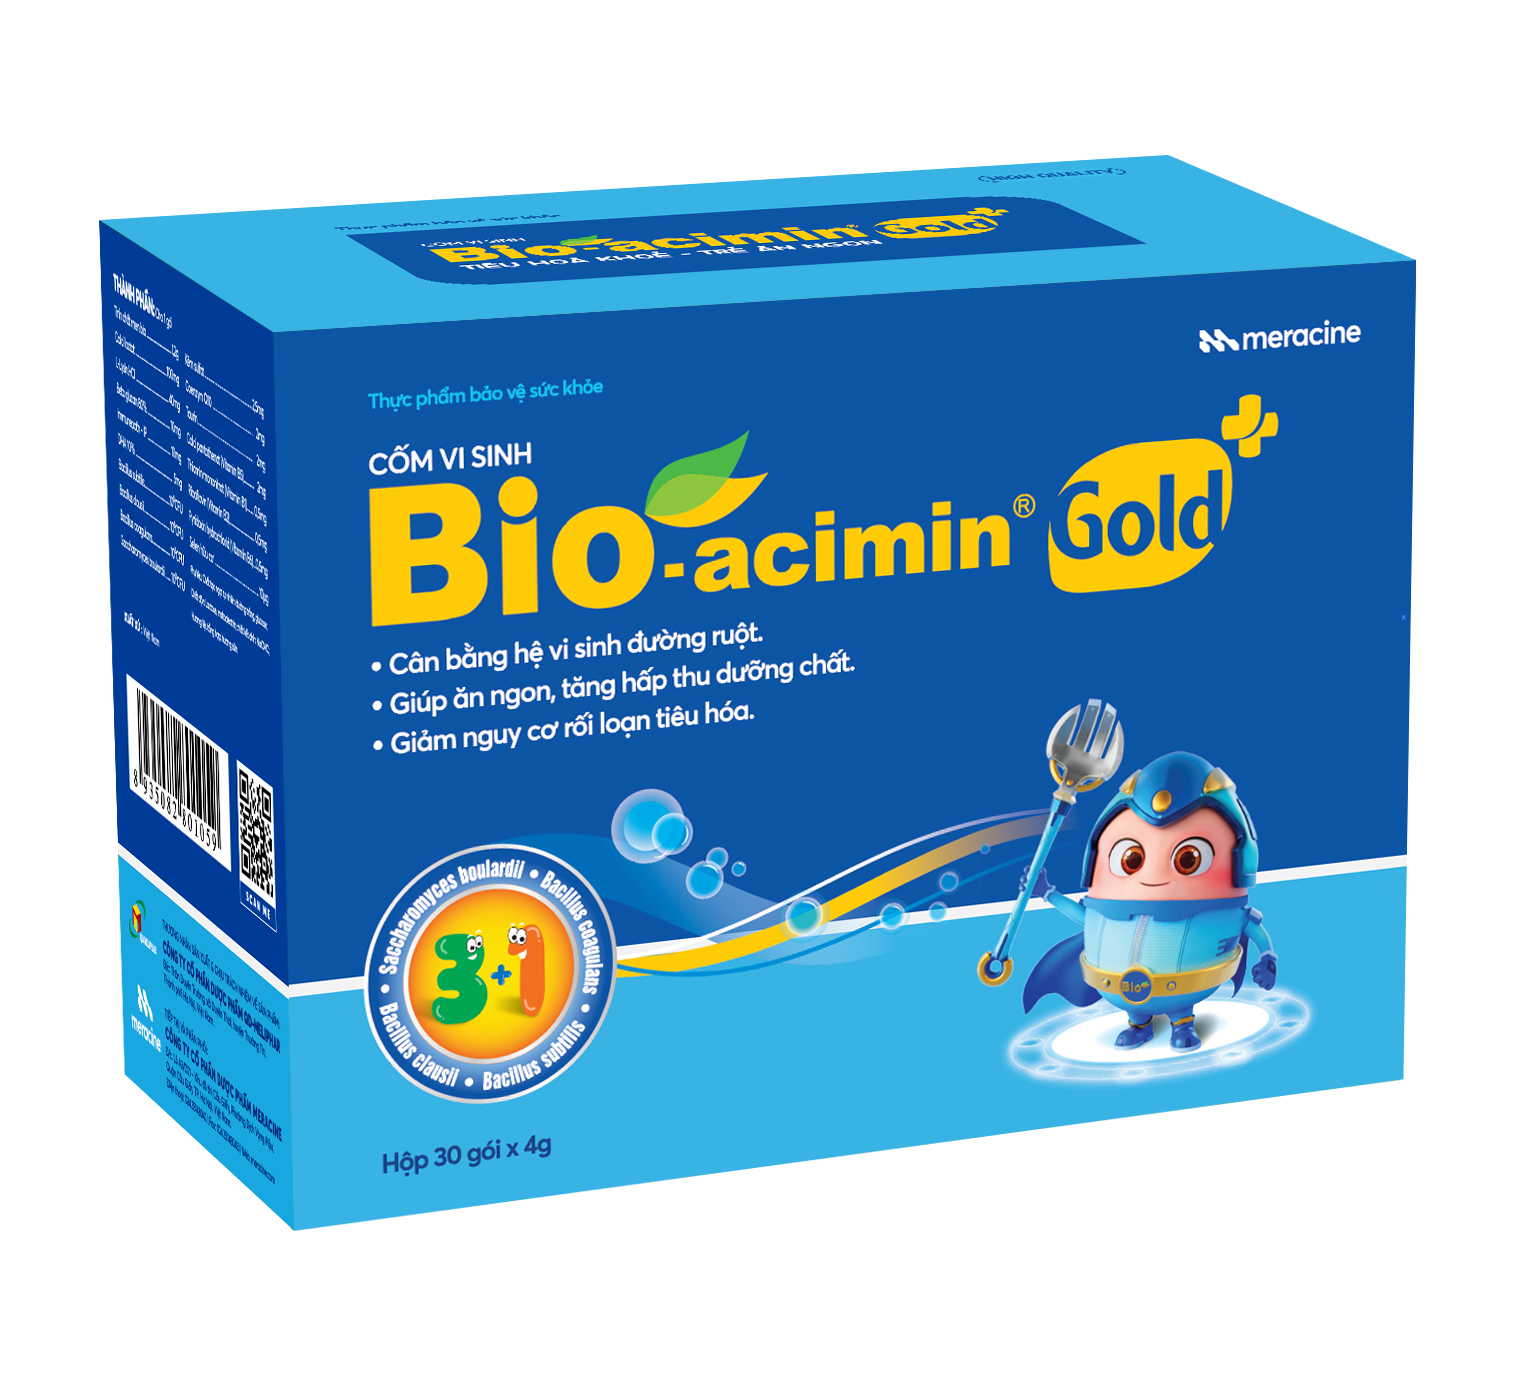 Thực phẩm bảo vệ sức khỏe Cốm vi sinh Bio-acimin Gold + (30 gói)